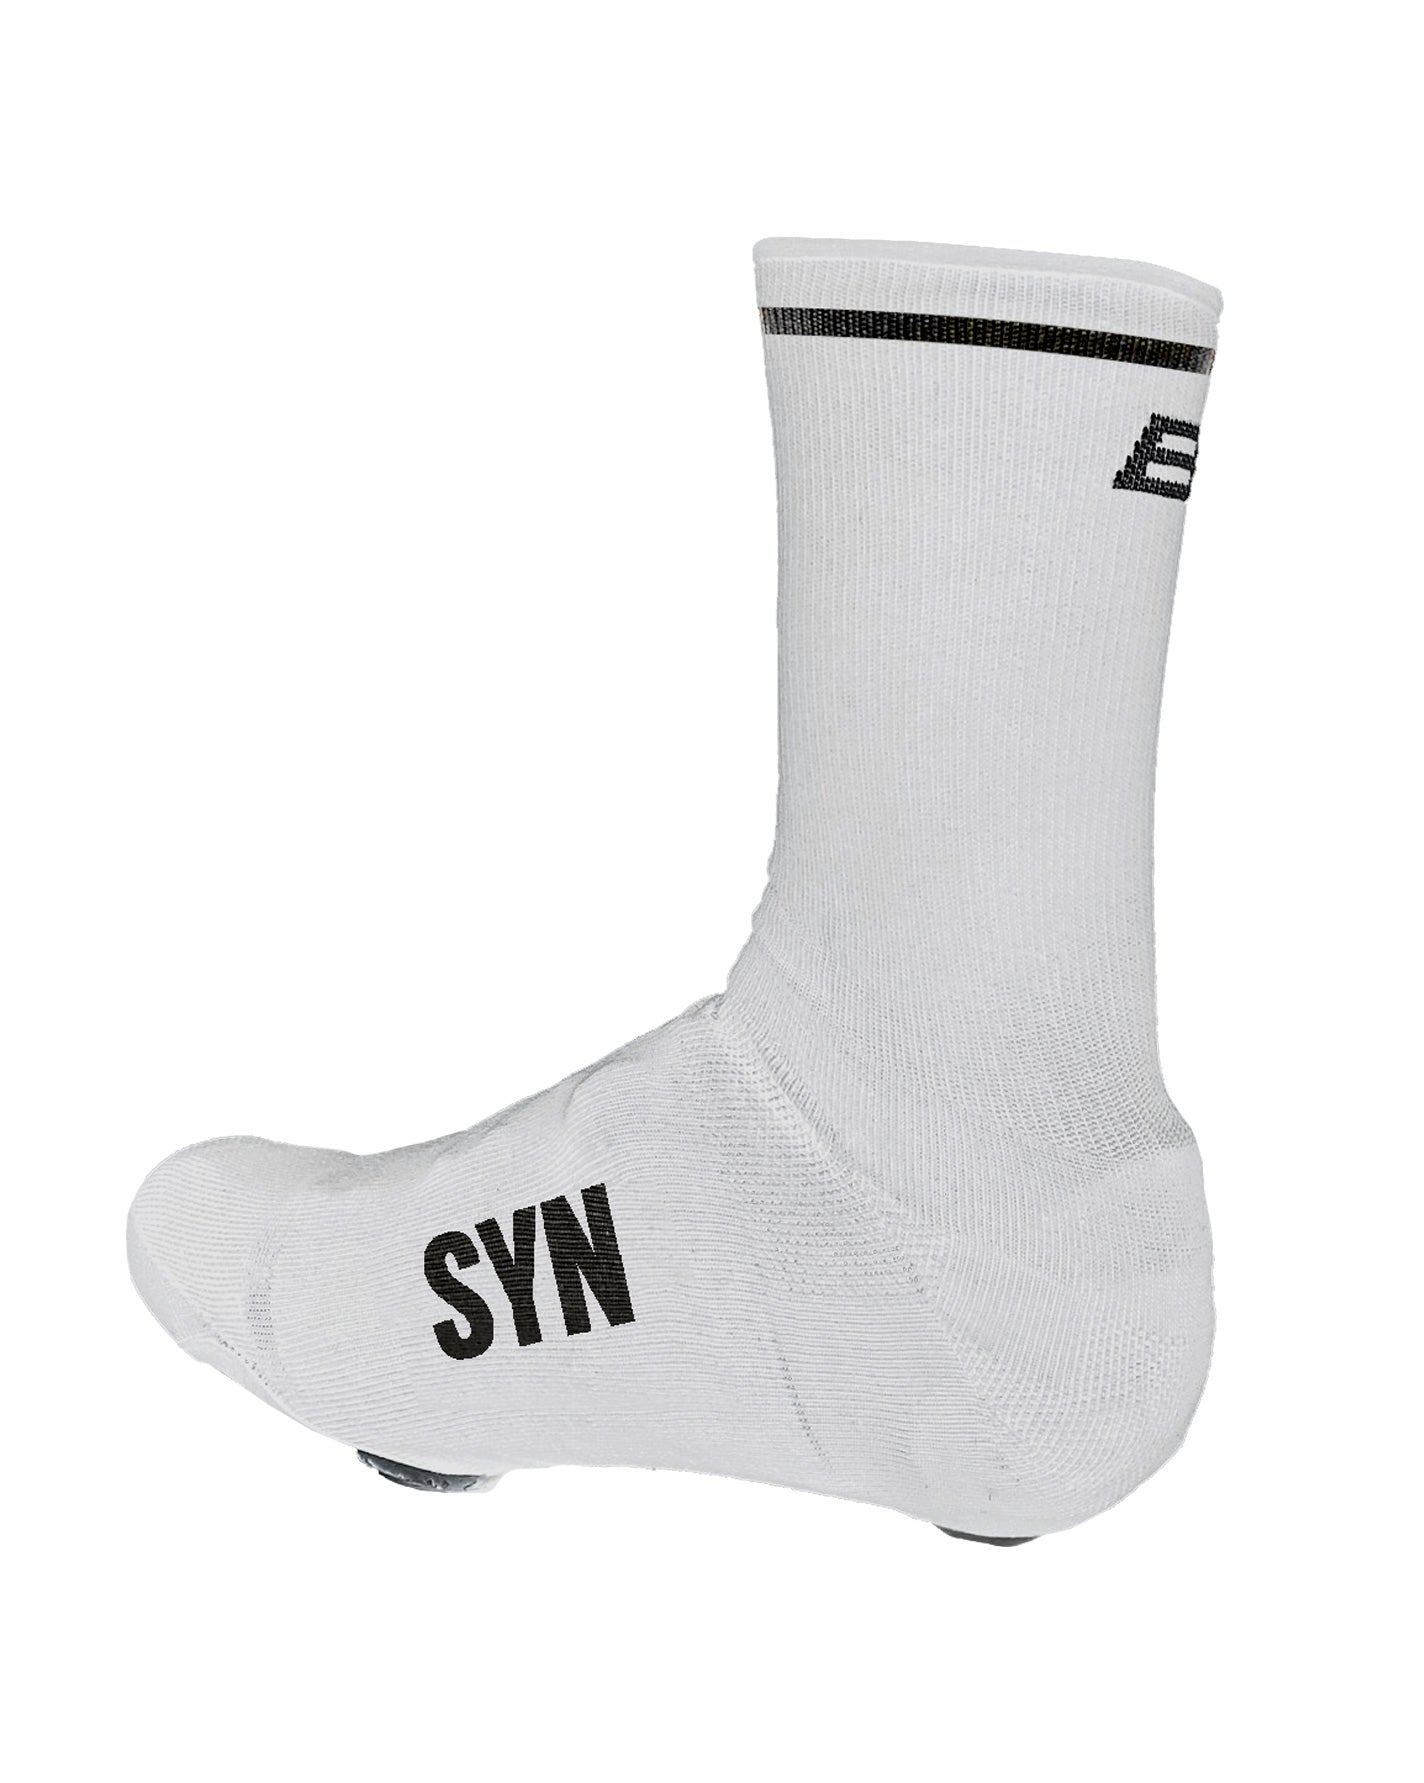 Syndicate Over Socks